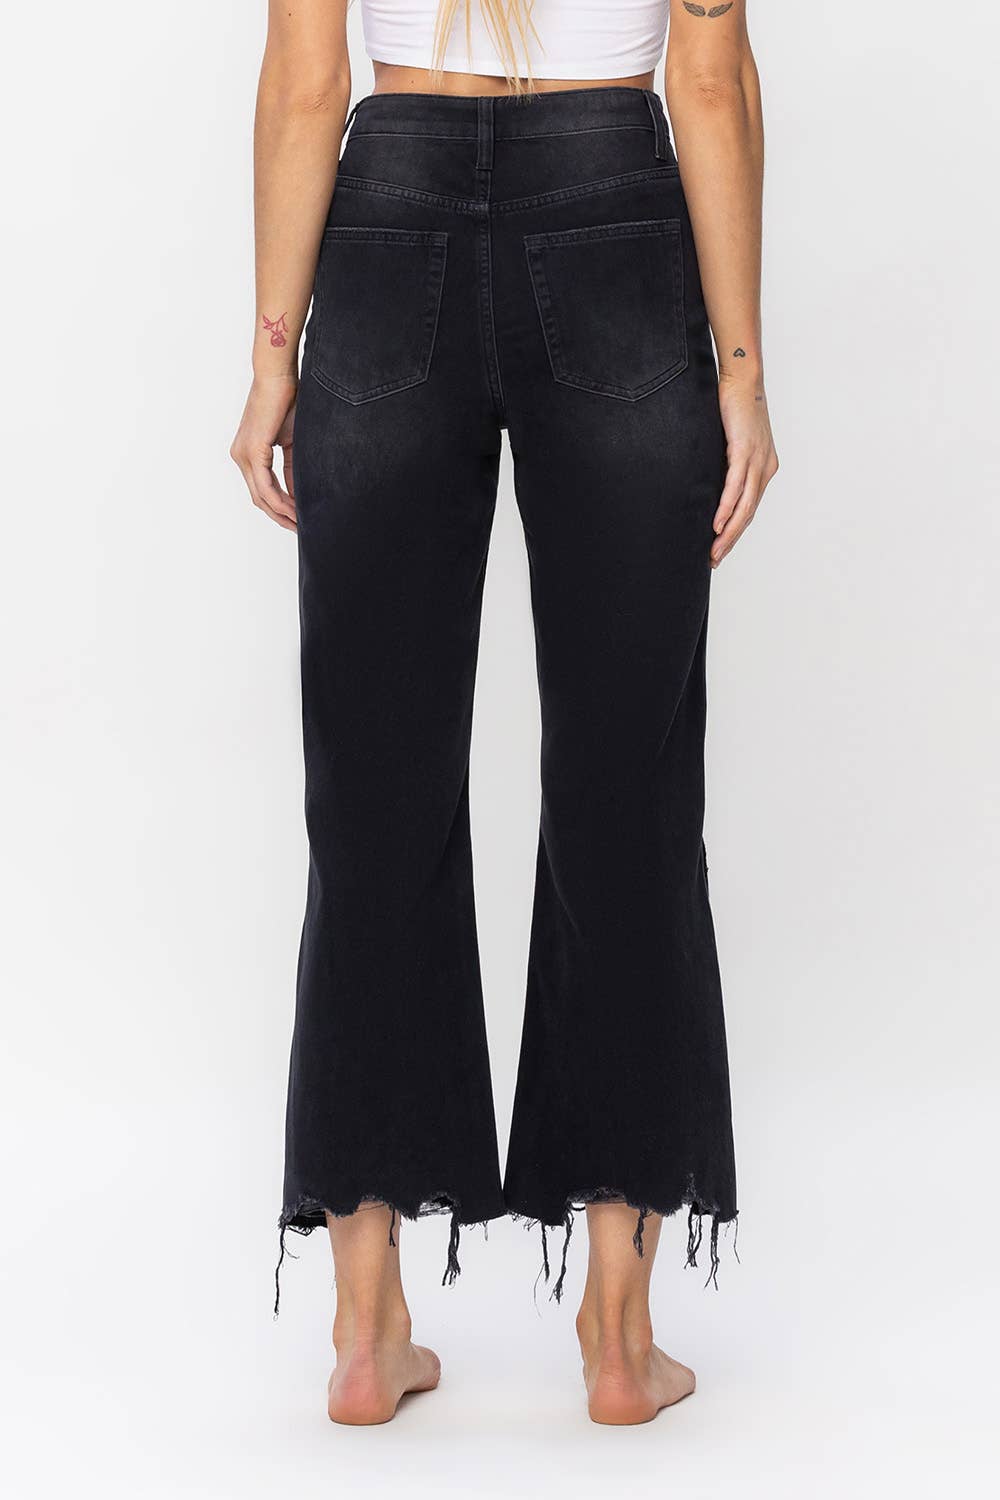 Leslie 90'S Crop Flare Jeans